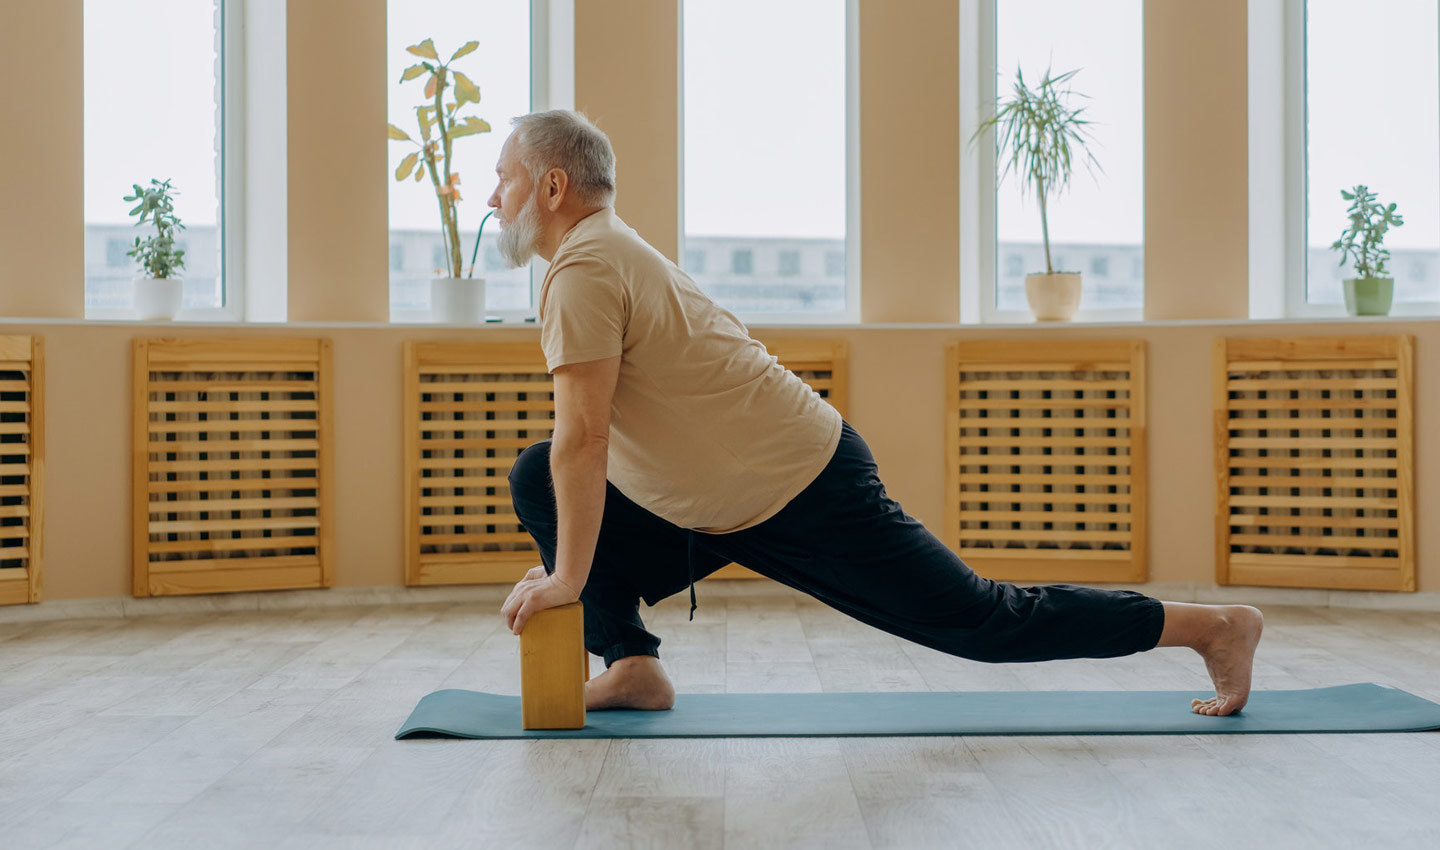 Ein älterer Mann mit Bart übt Yoga in der Wohnung